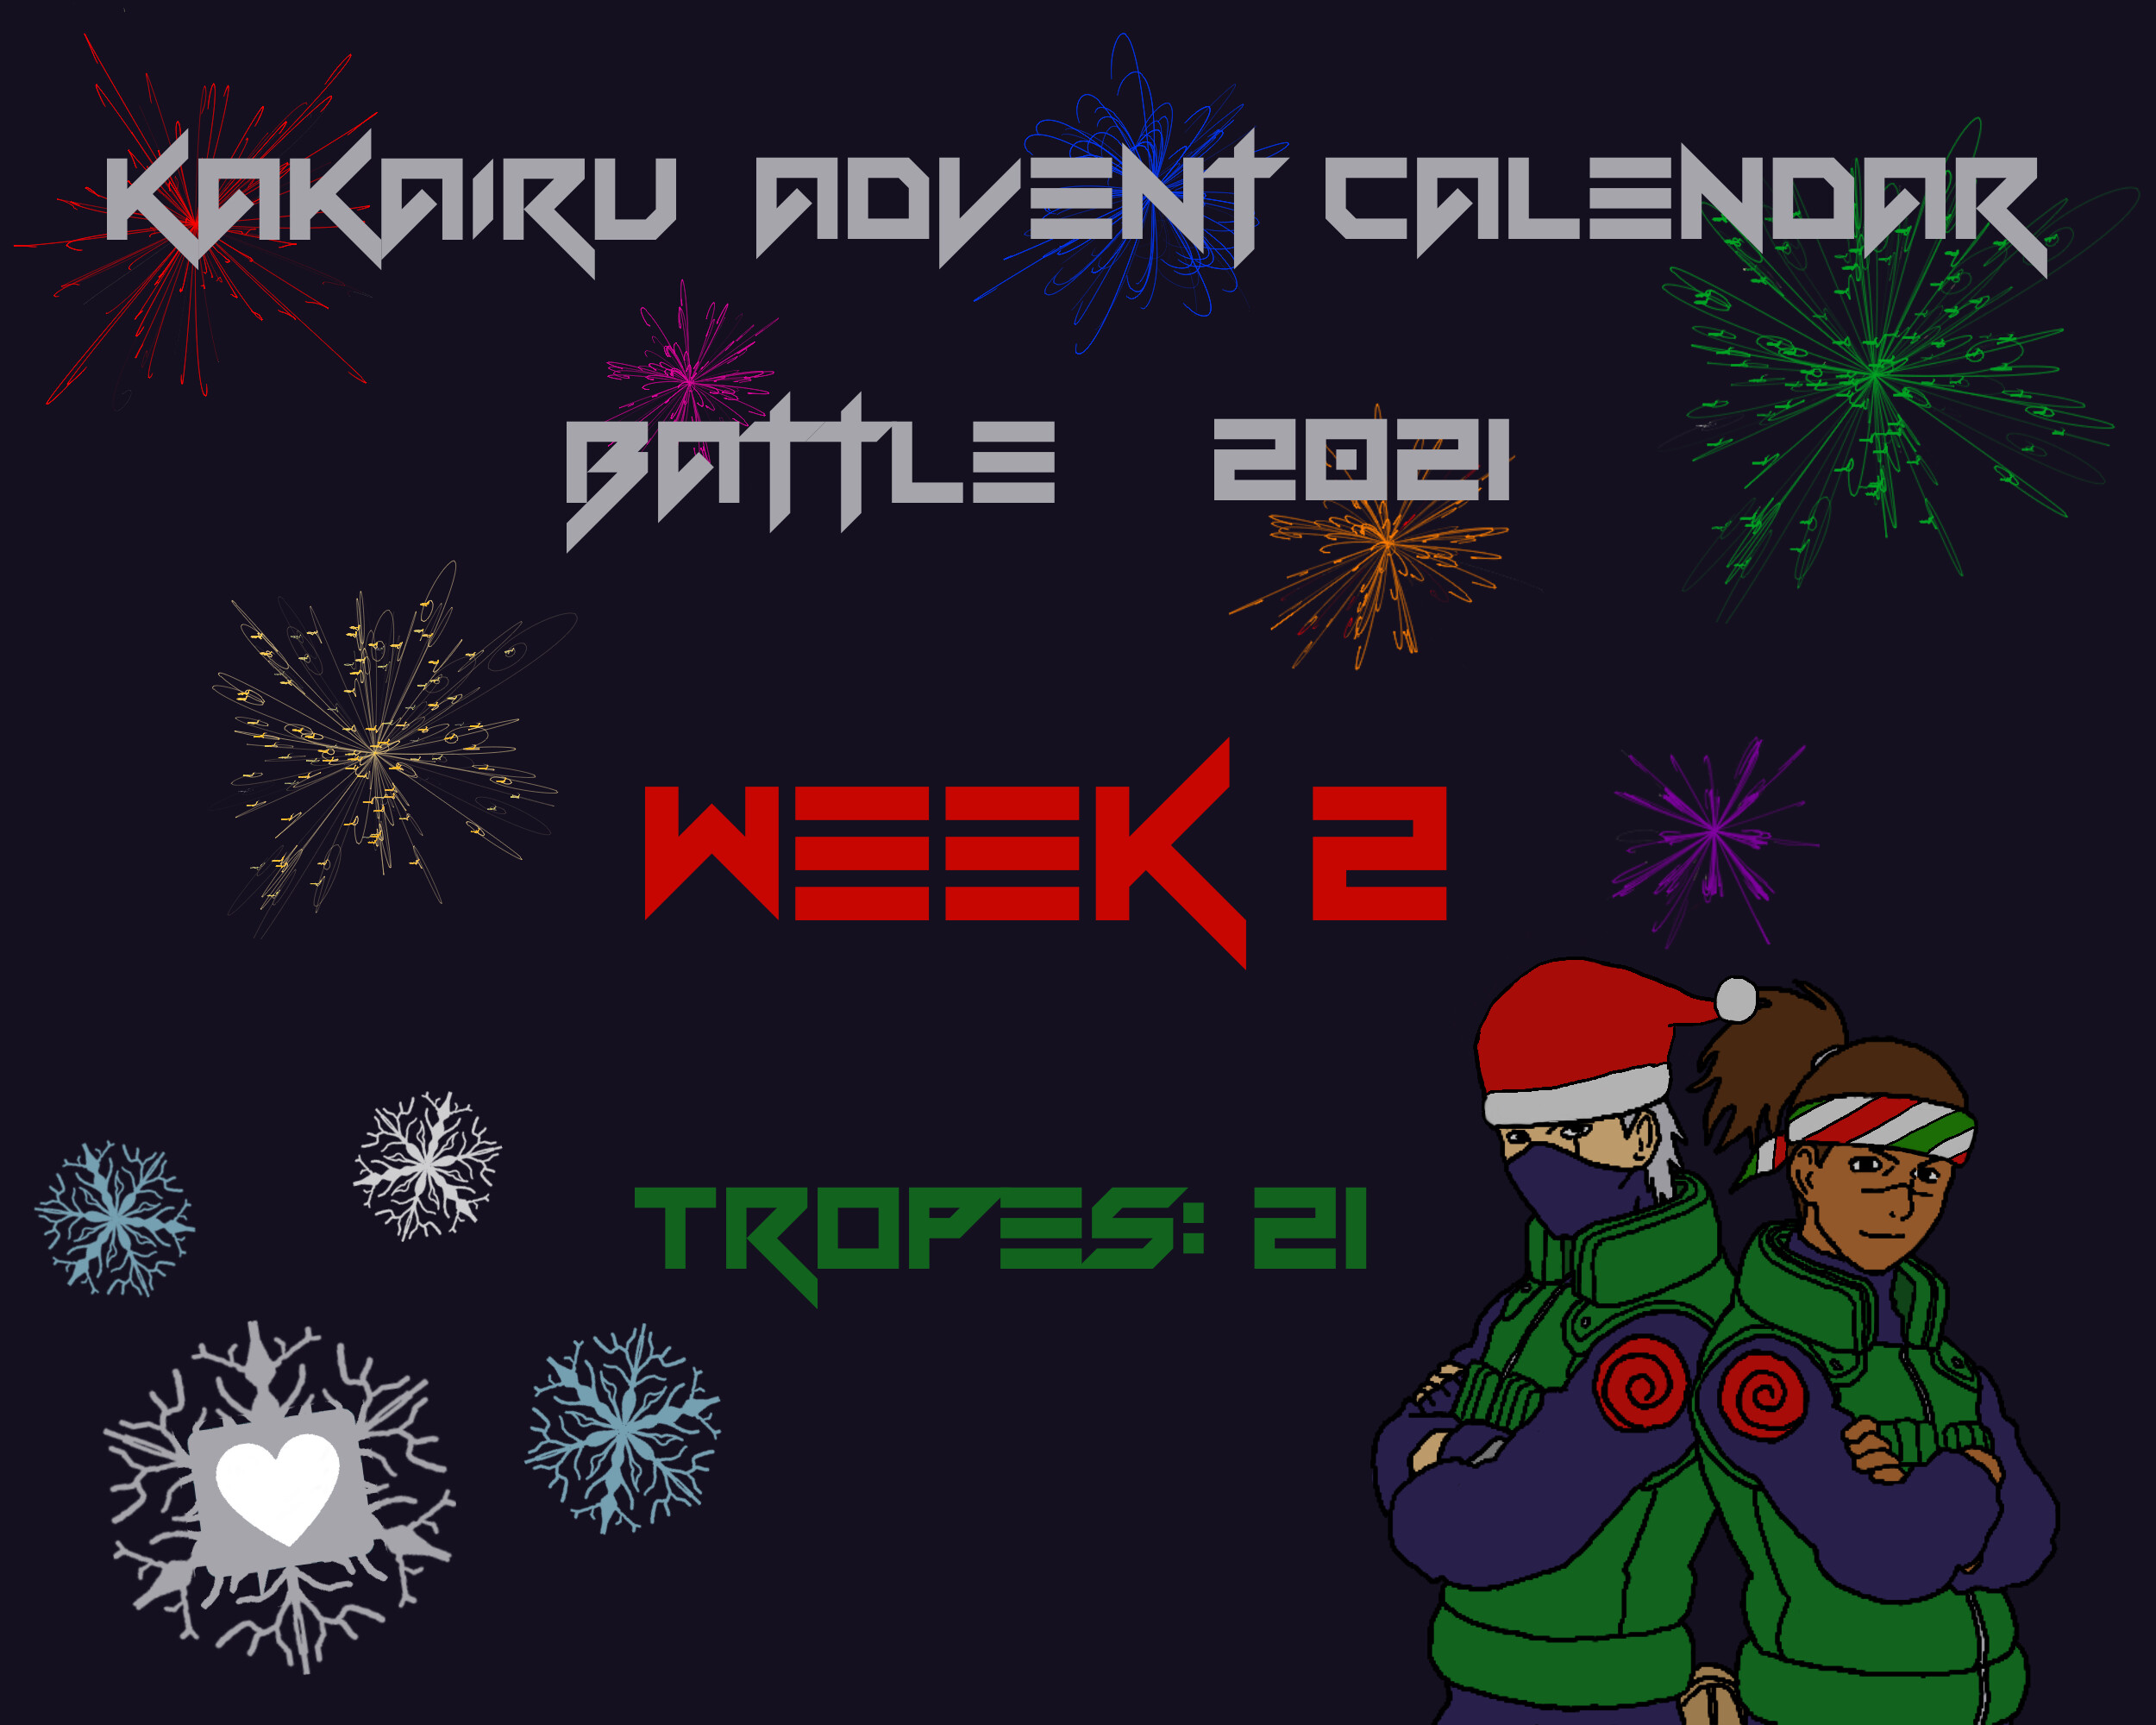 week 2 advent calendar battle